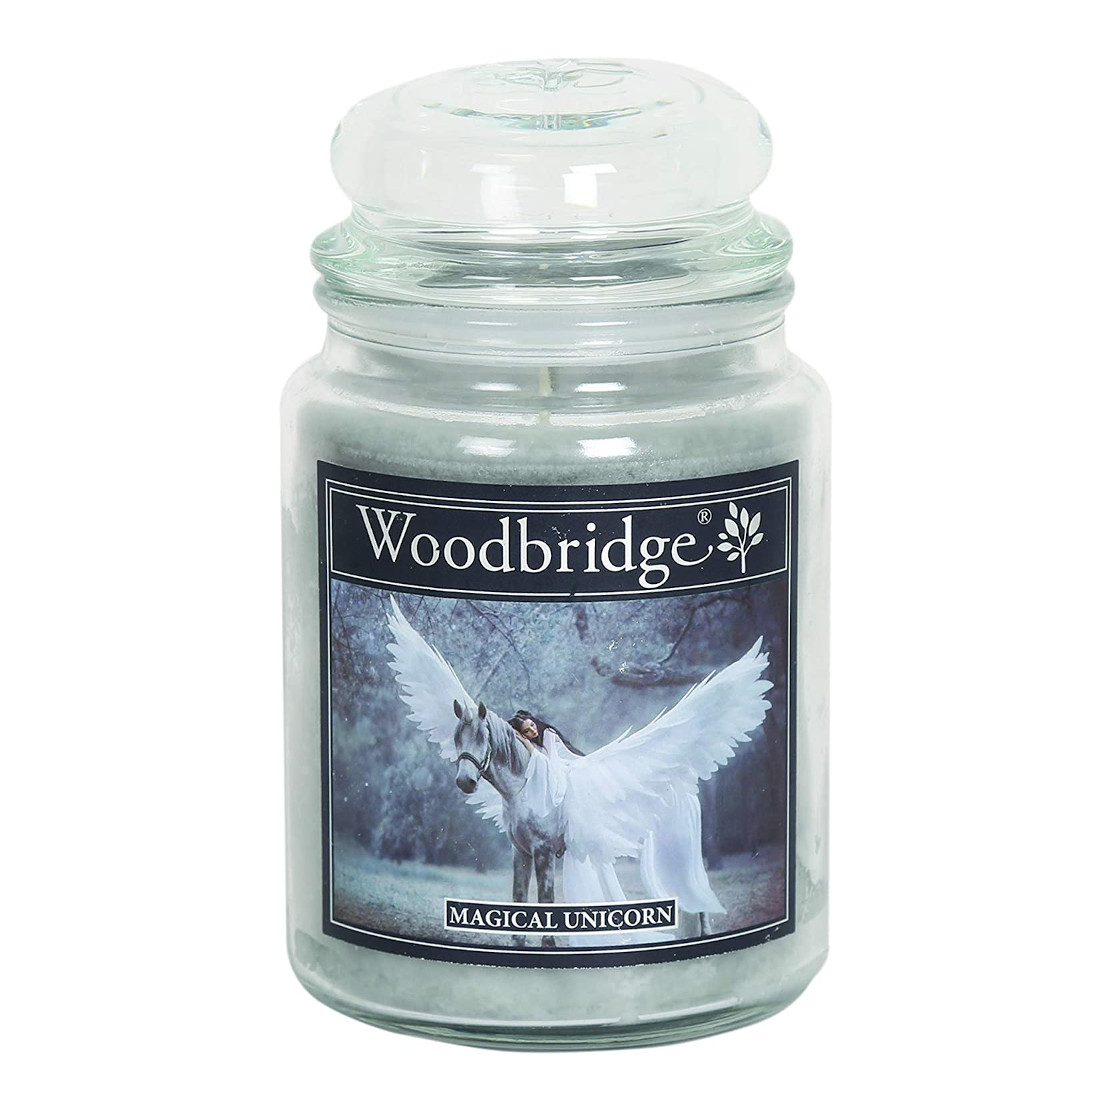 Woodbridge Magical Unicorn Candle Large Jar